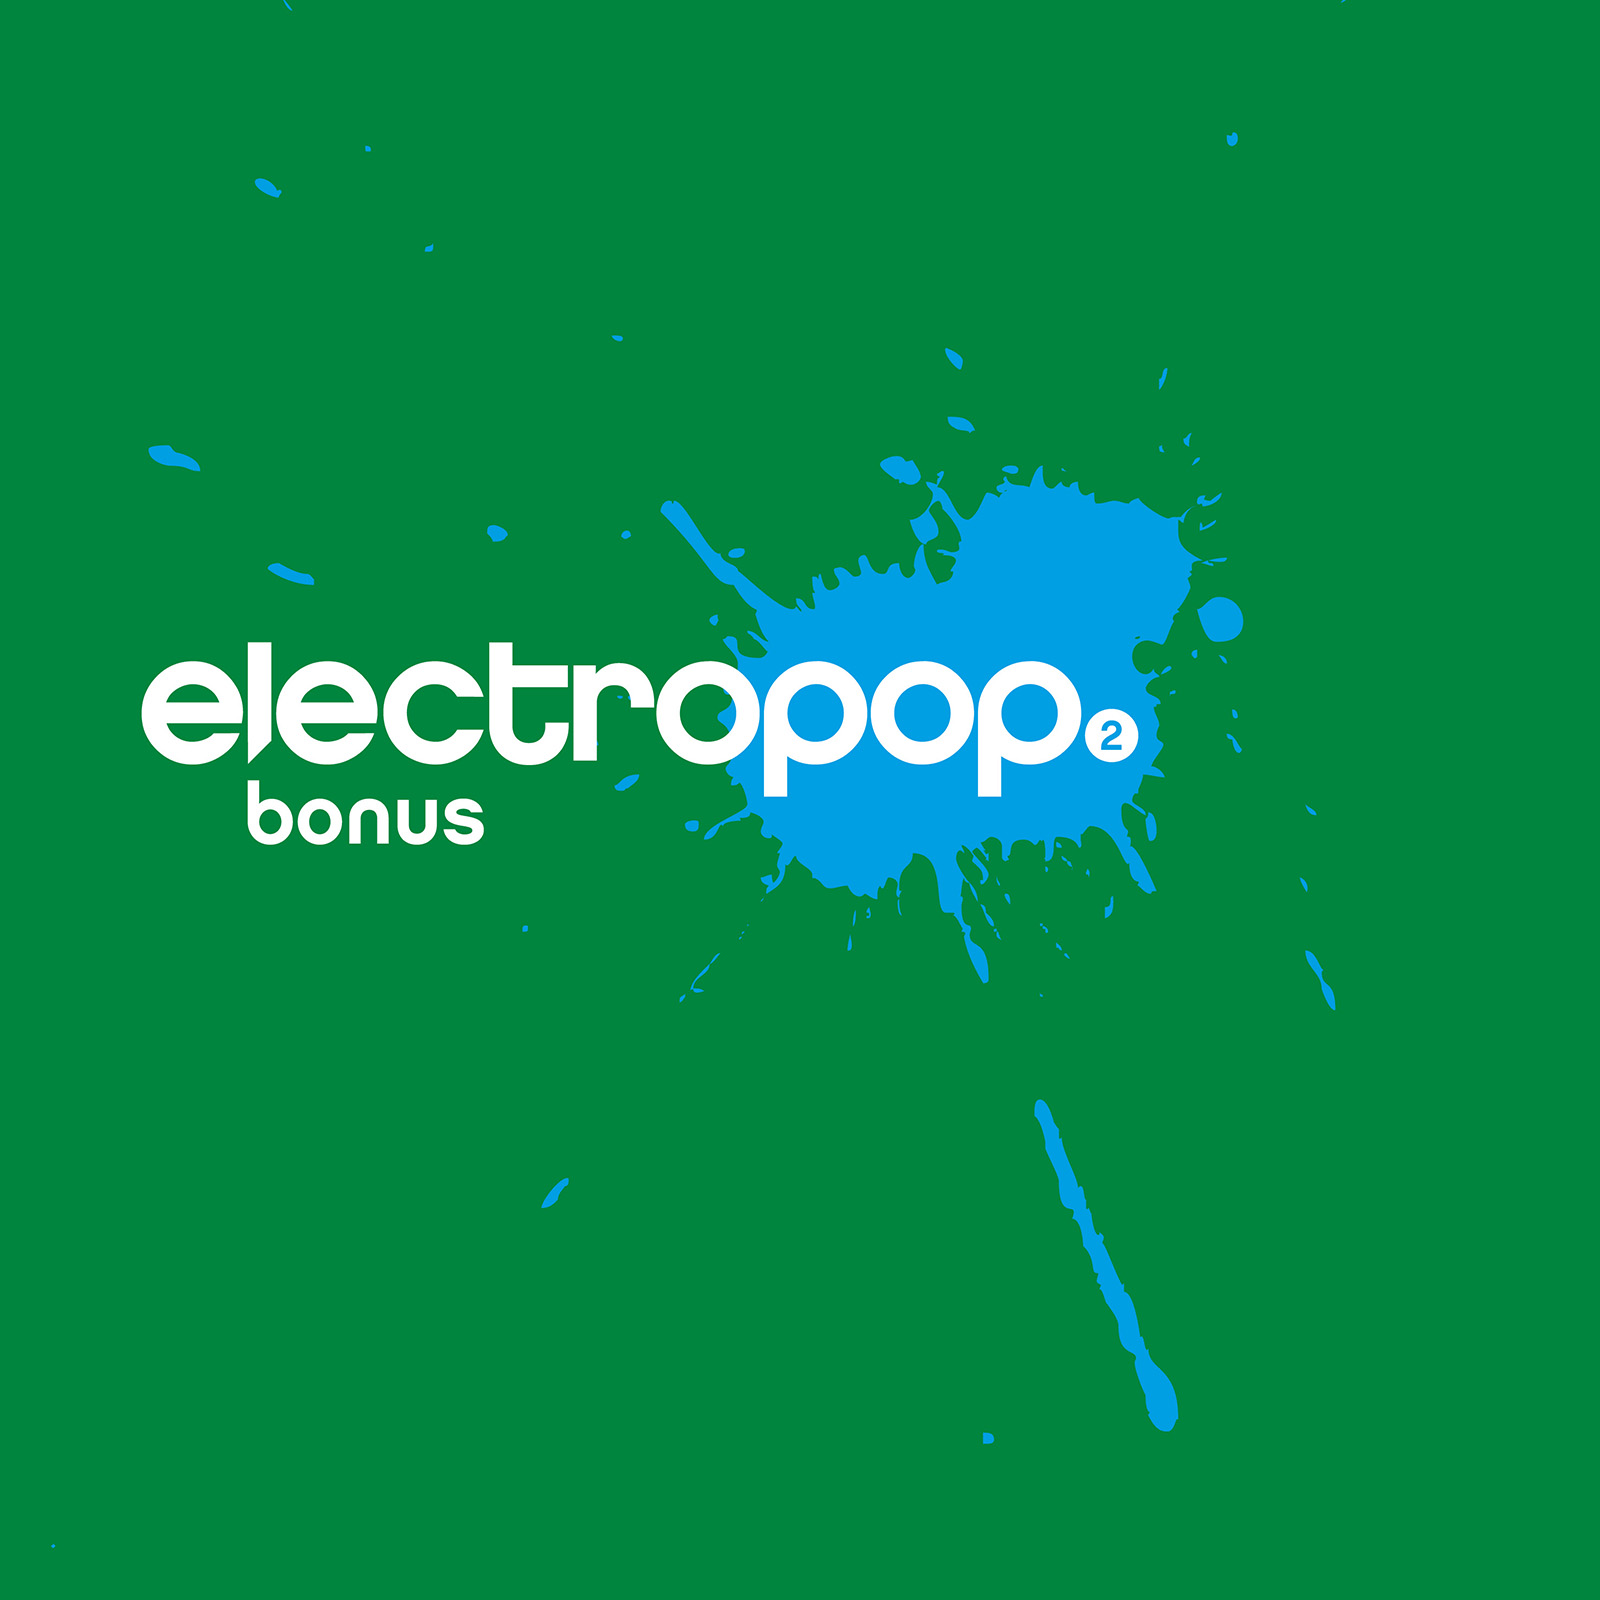 electropop.19 bonus 2